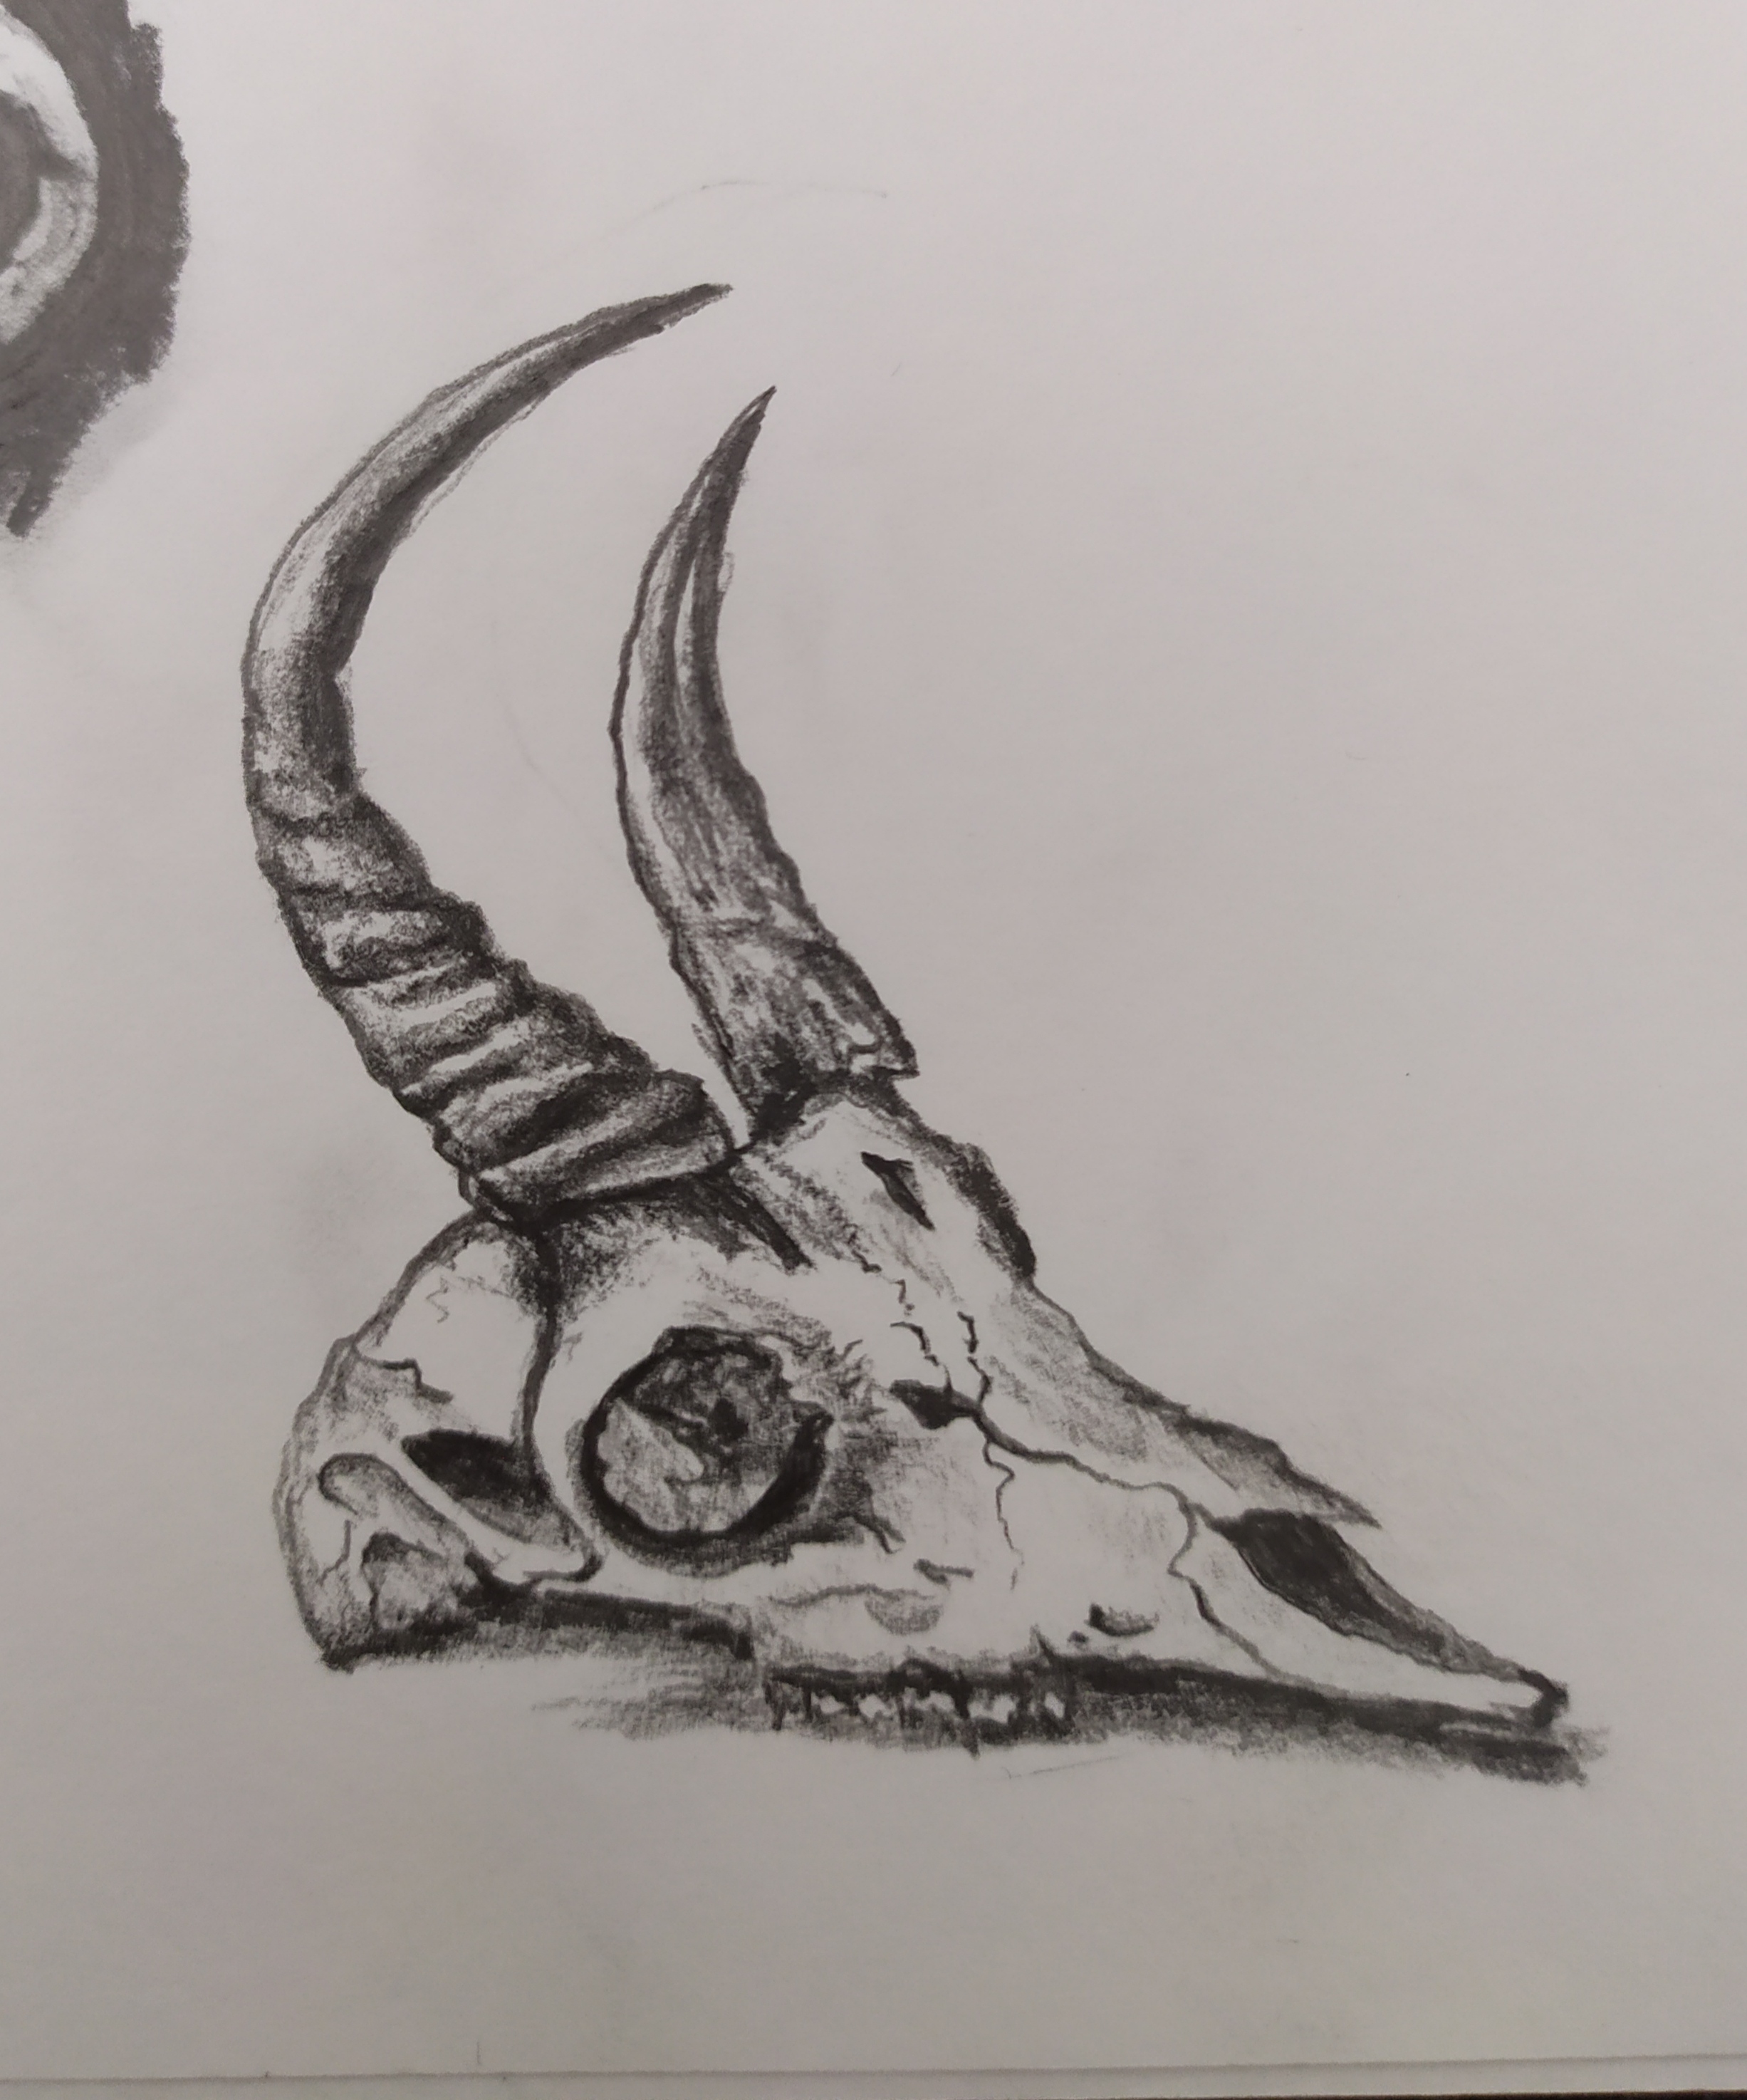 Animal Skull Practice - Pencil Sketch by llAkikochanll on DeviantArt